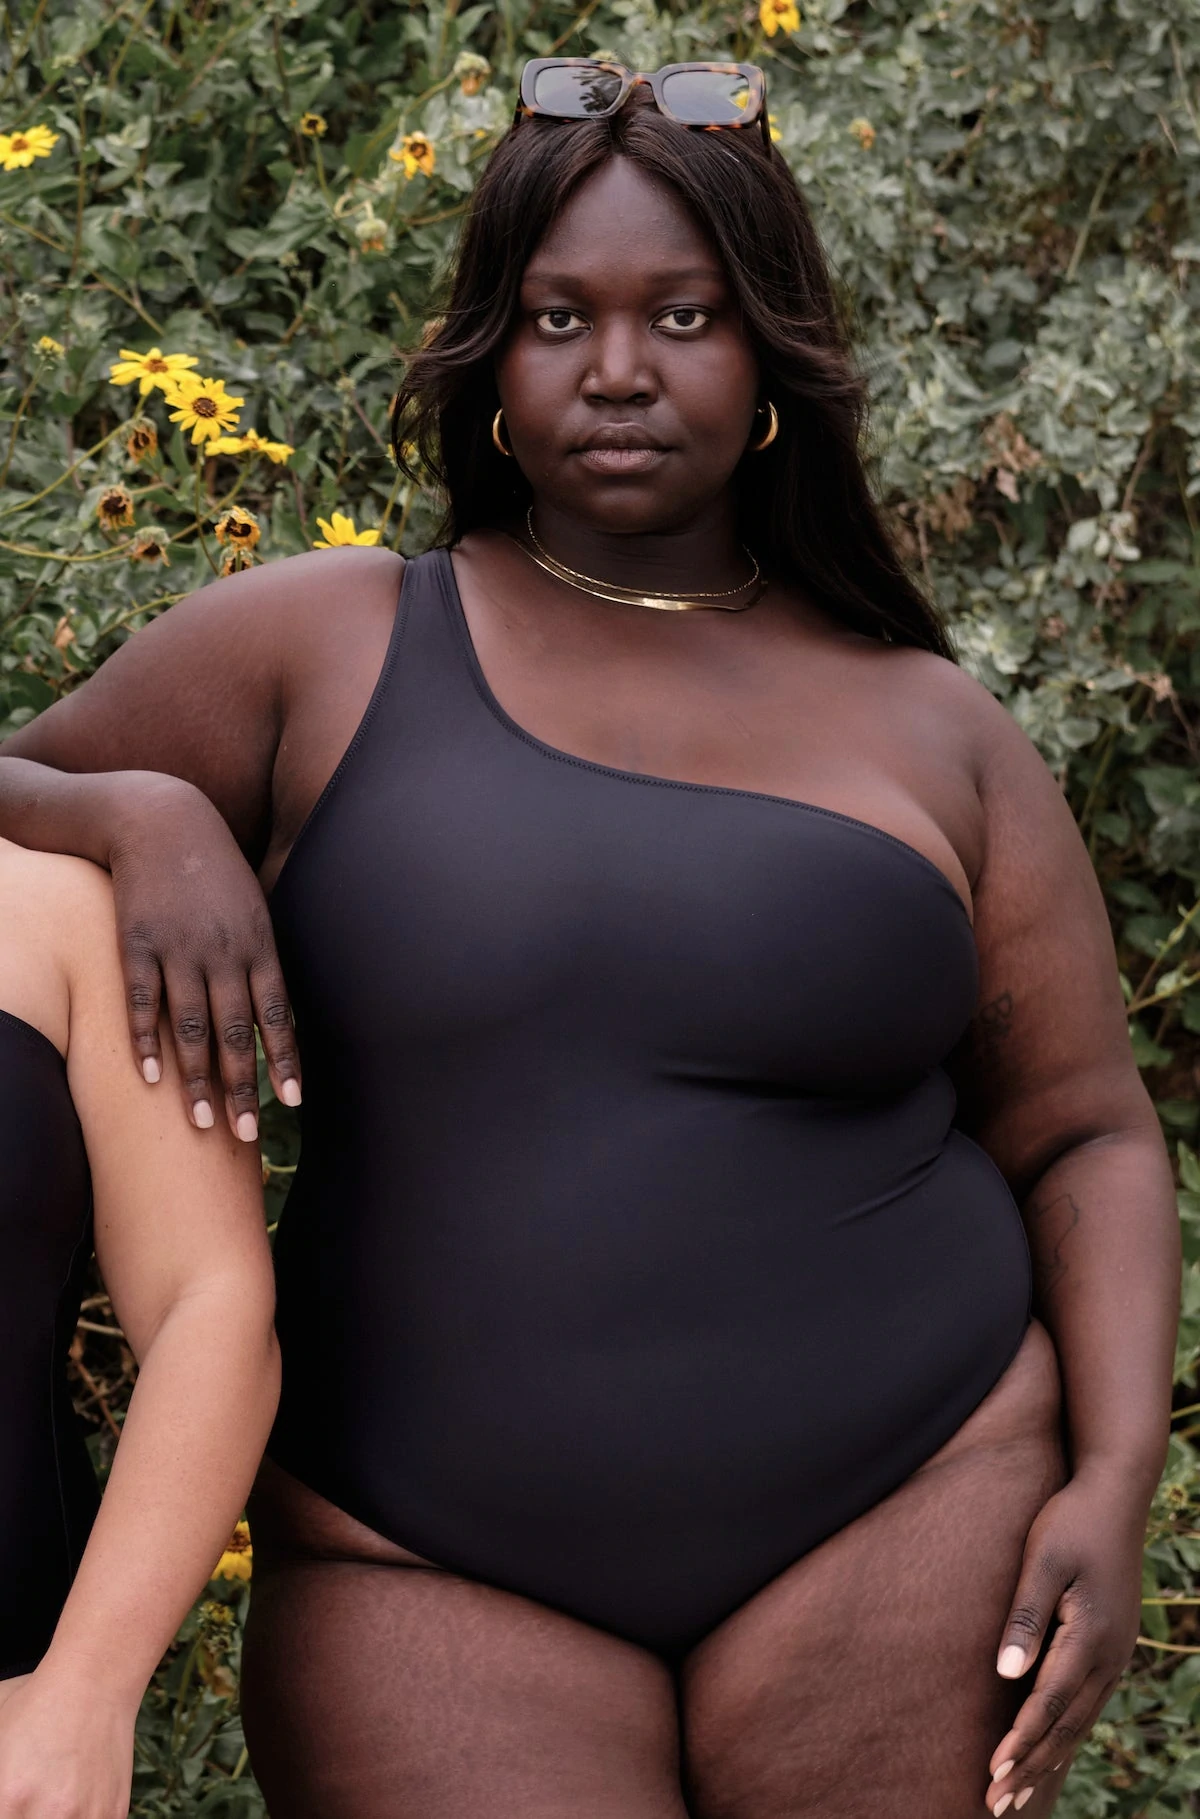 Sexy Black Women Pic